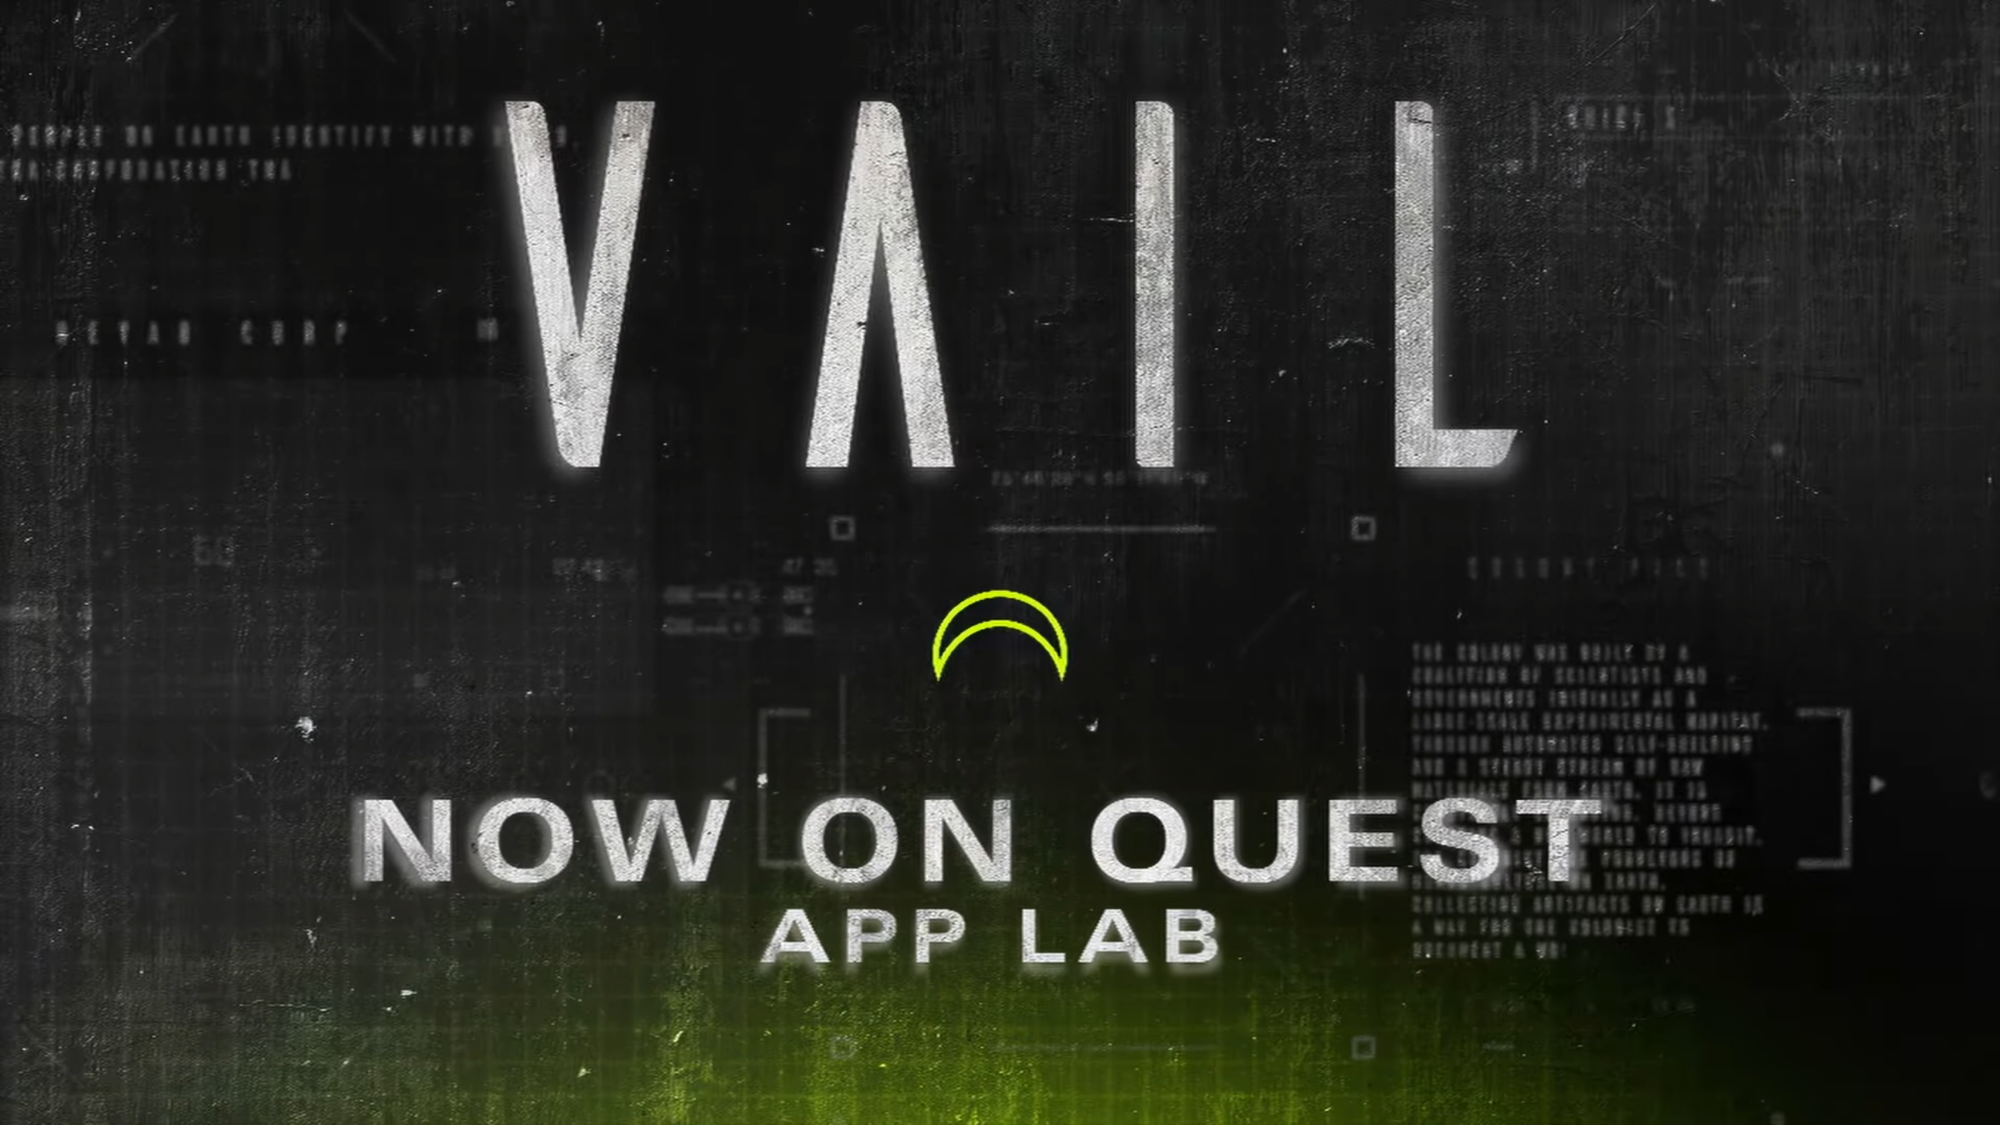 El shooter multijugador Vail VR ya está disponible en Quest App Lab